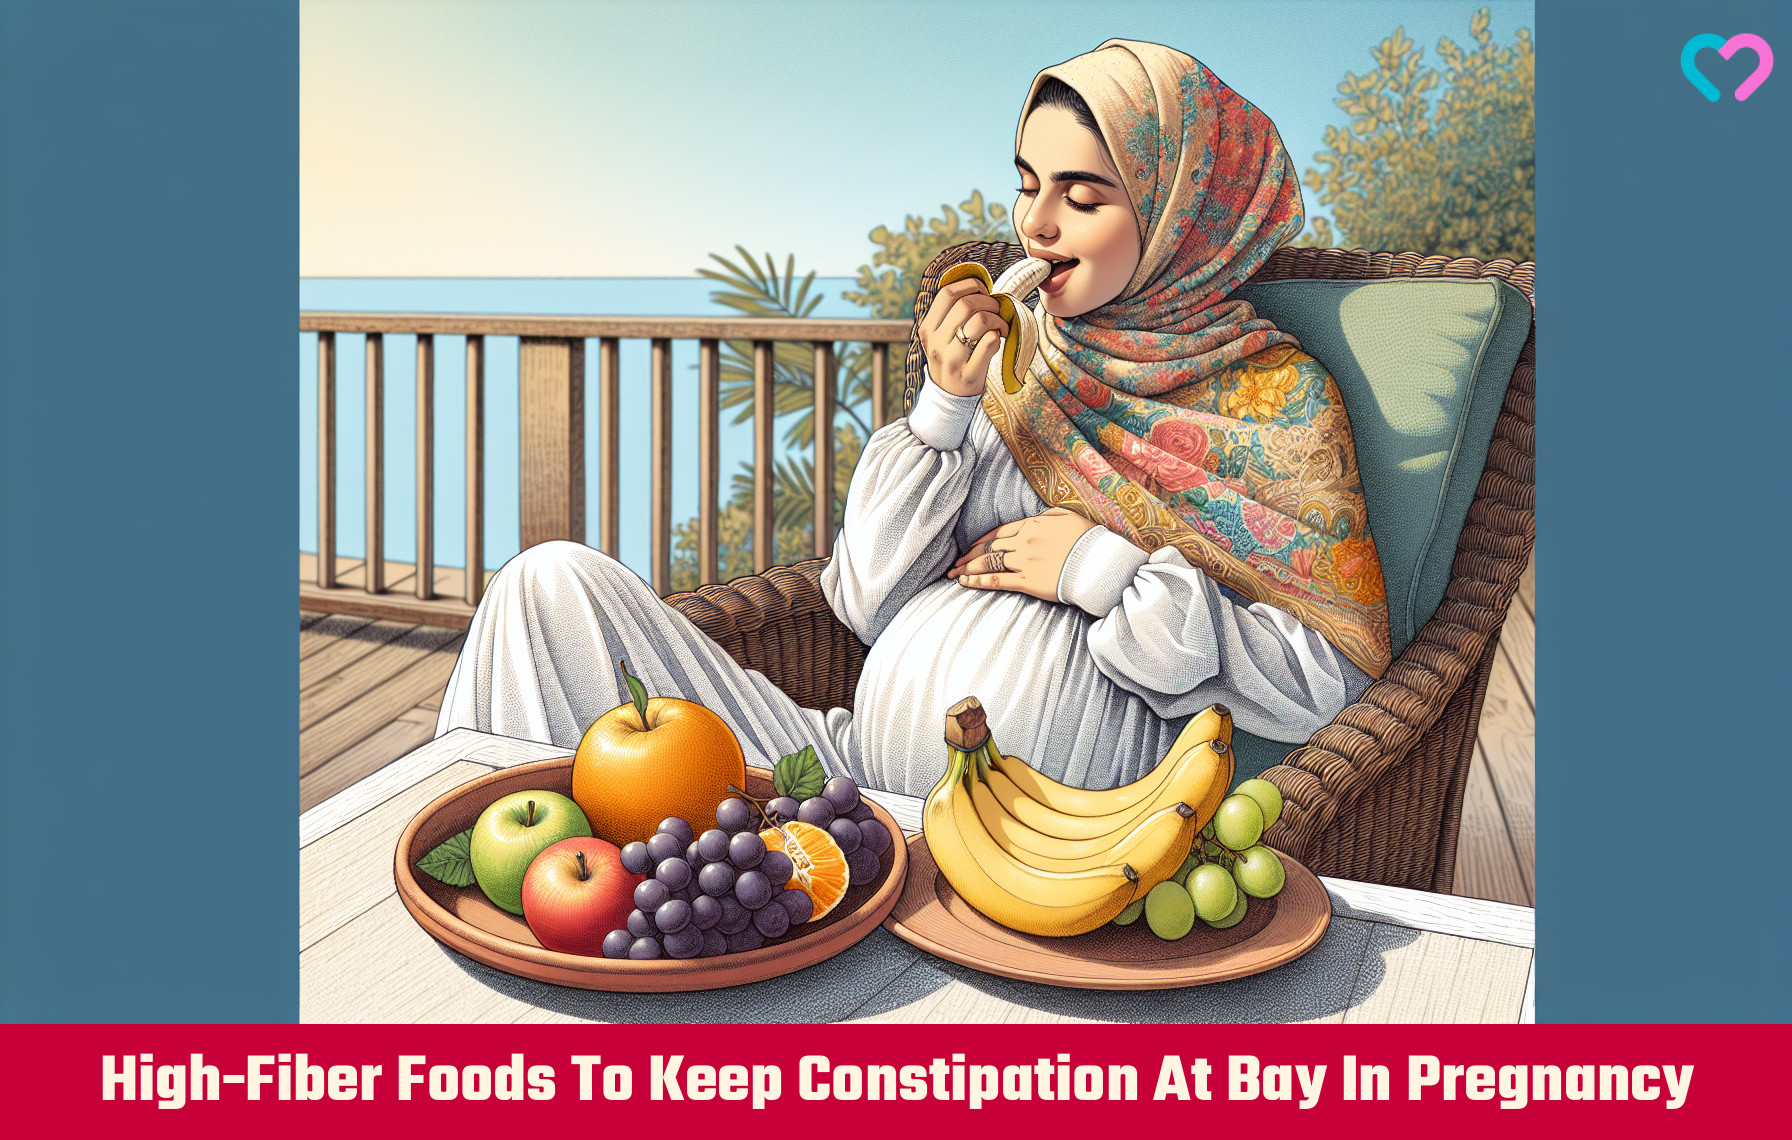 fiber rich foods during pregnancy_illustration